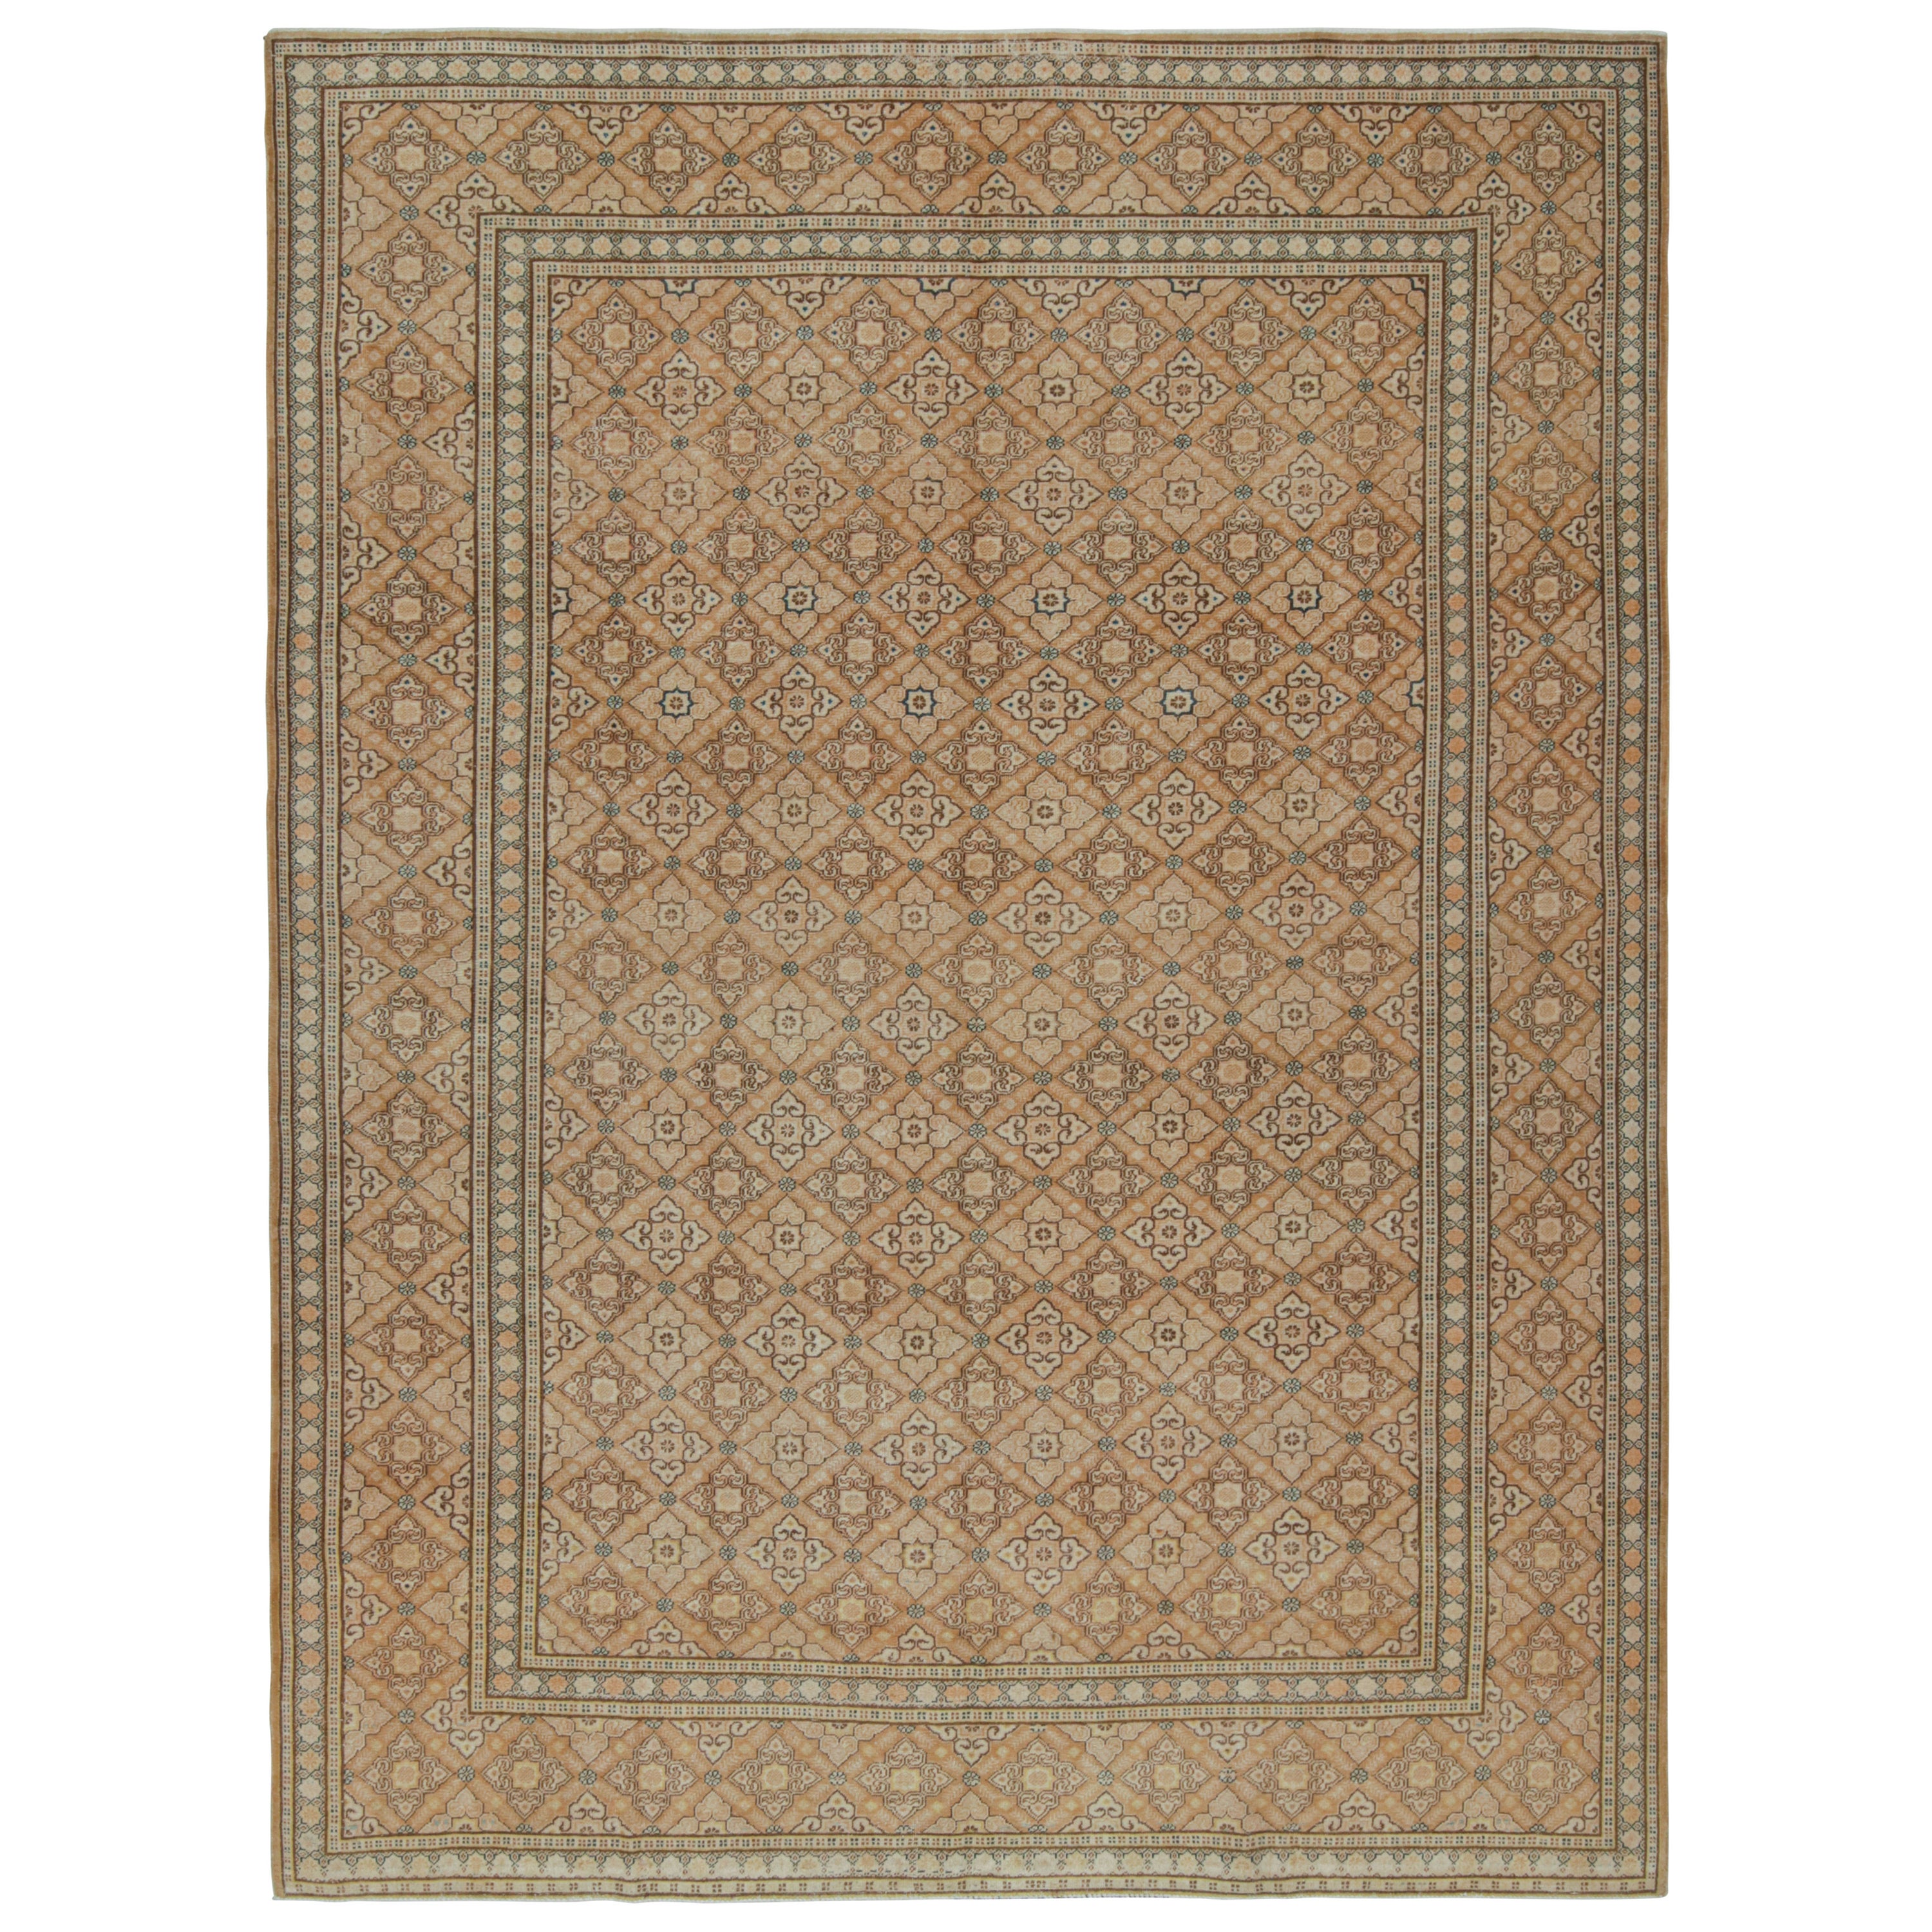 Persischer Tabriz-Teppich in Brown, mit Blumenmustern, von Rug & Kilim